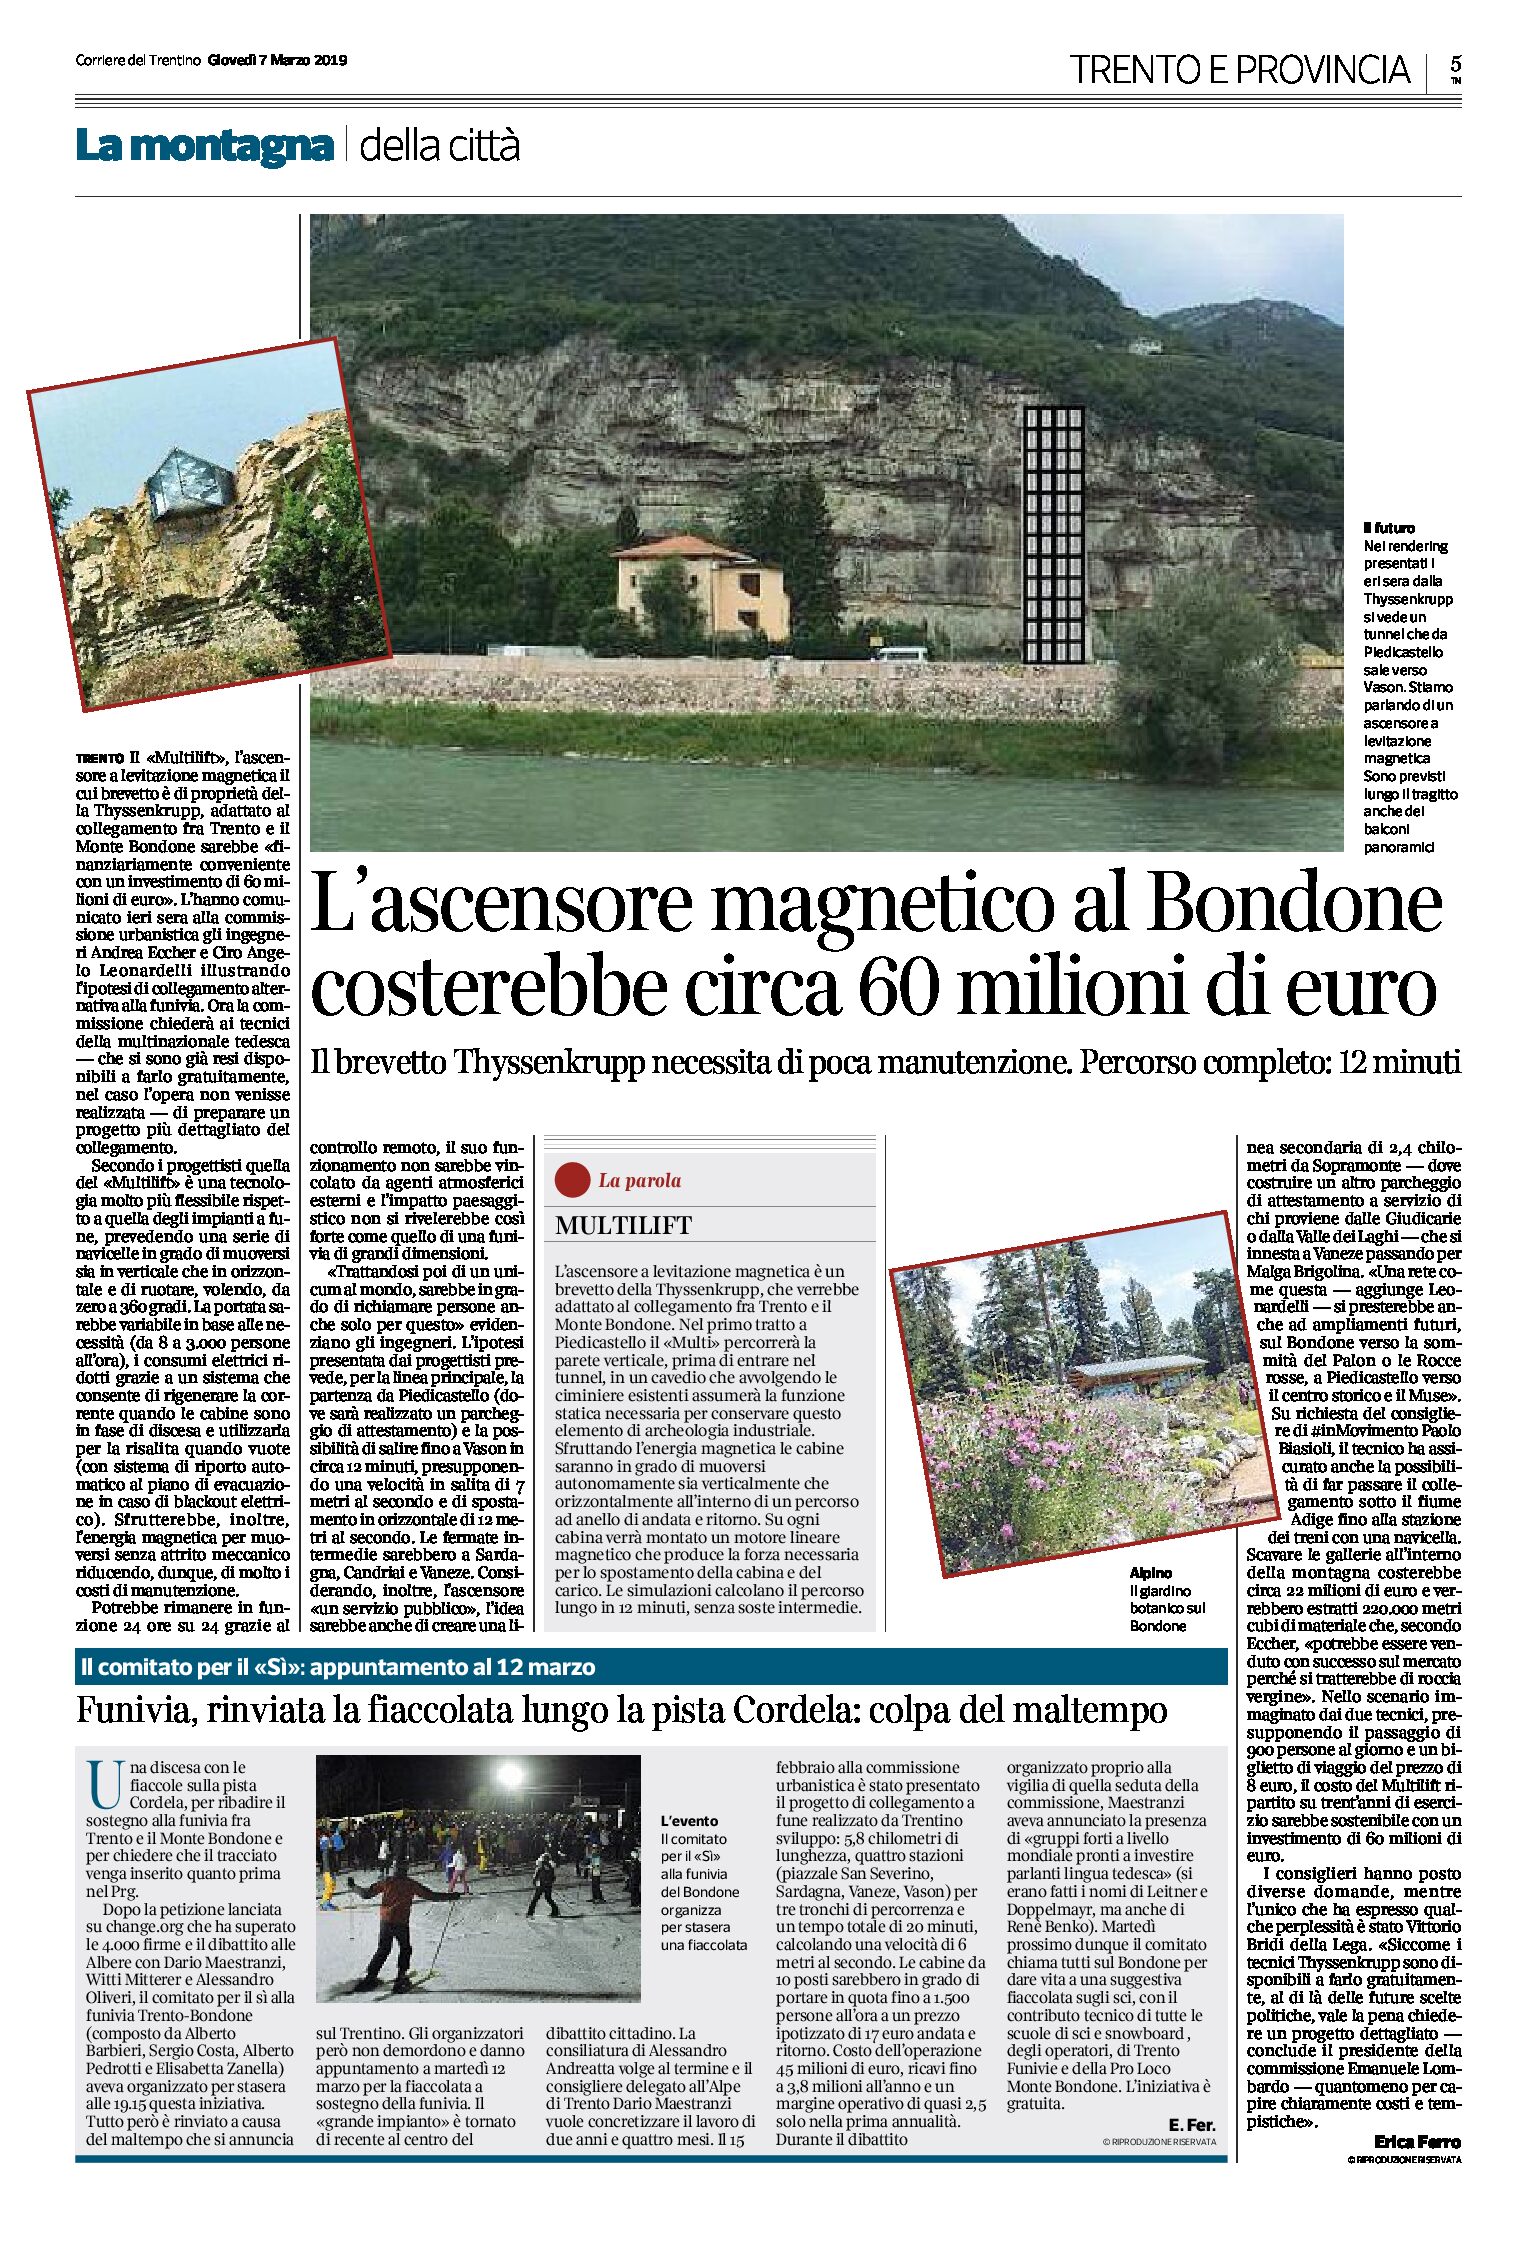 Trento-Bondone: l’ascensore magnetico costerebbe circa 60 milioni di euro. Percorso 12 minuti